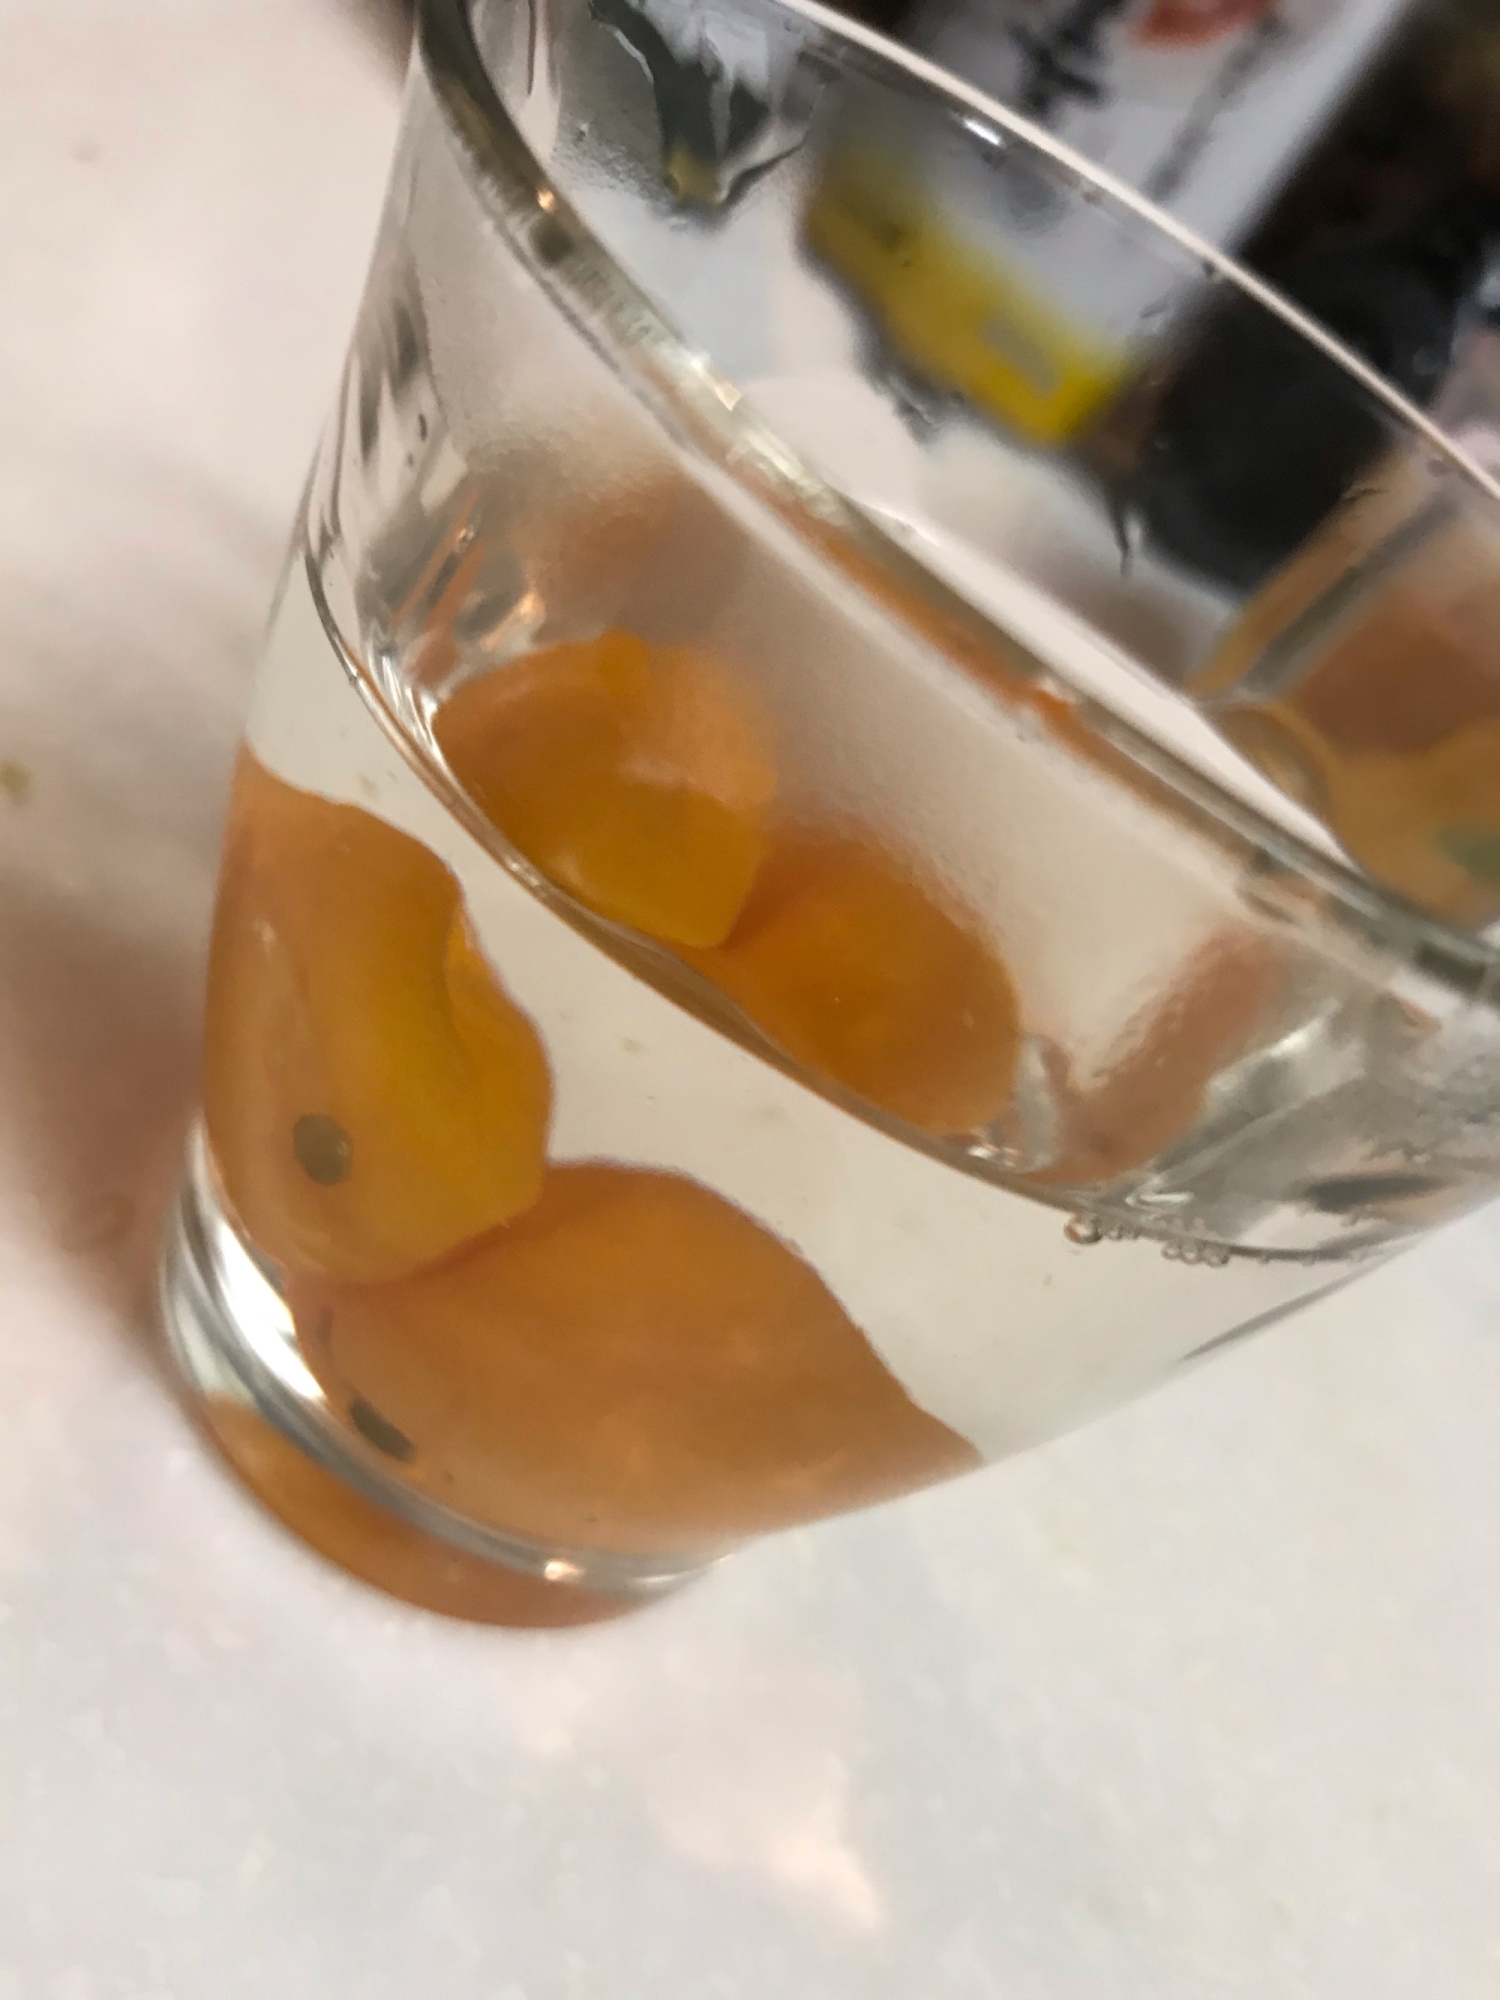 透明のグラスに入った金柑とお湯